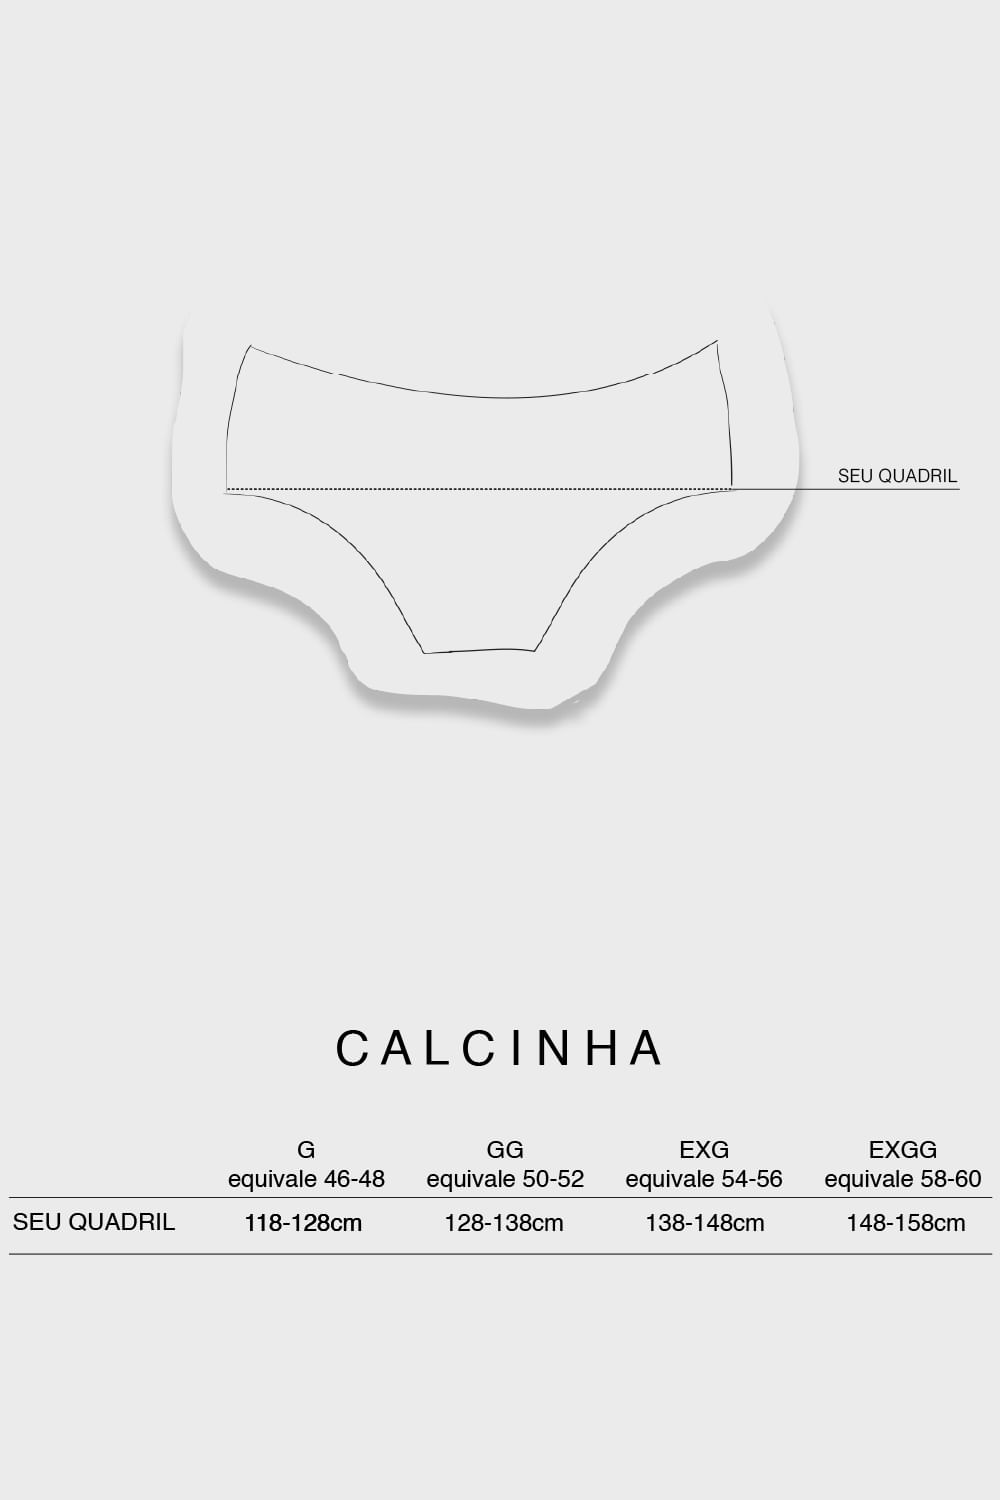 medida_calcinha